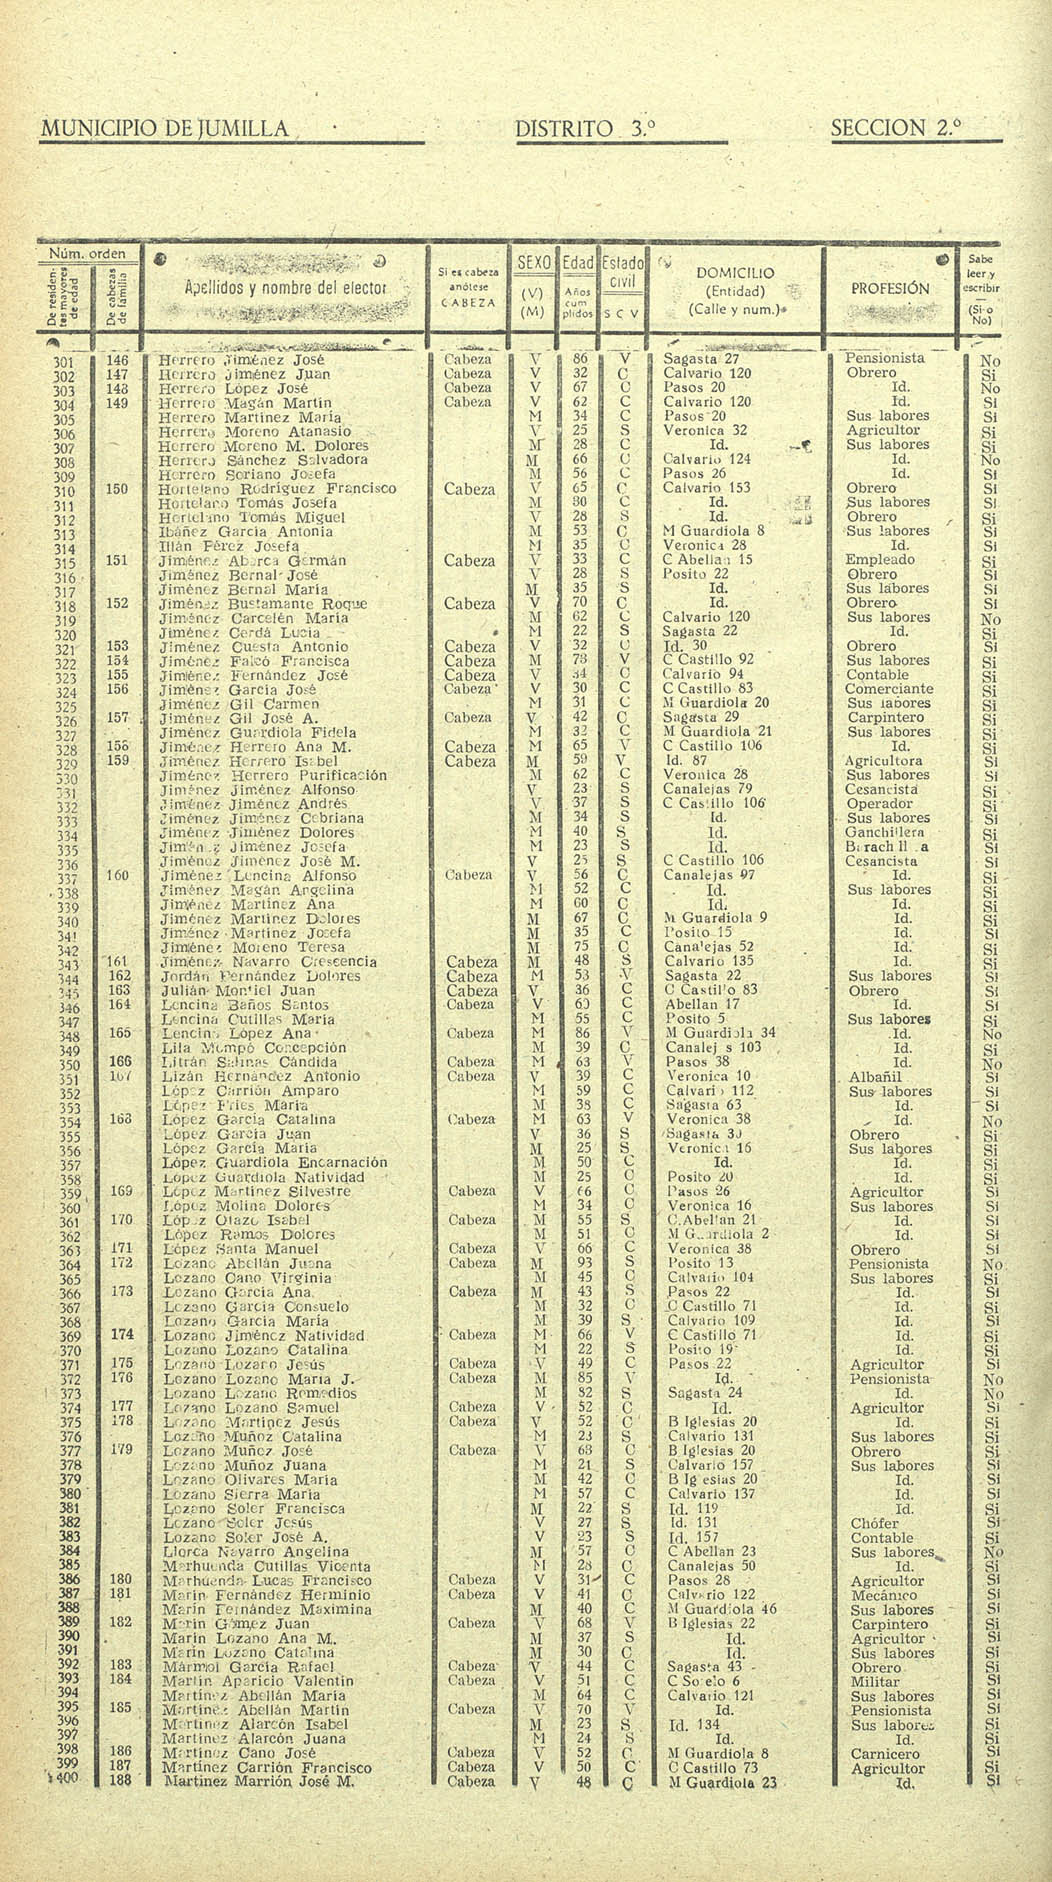 Censo electoral provincial de 1955. Volumen II: De Cieza a Murcia (distrito 3º)